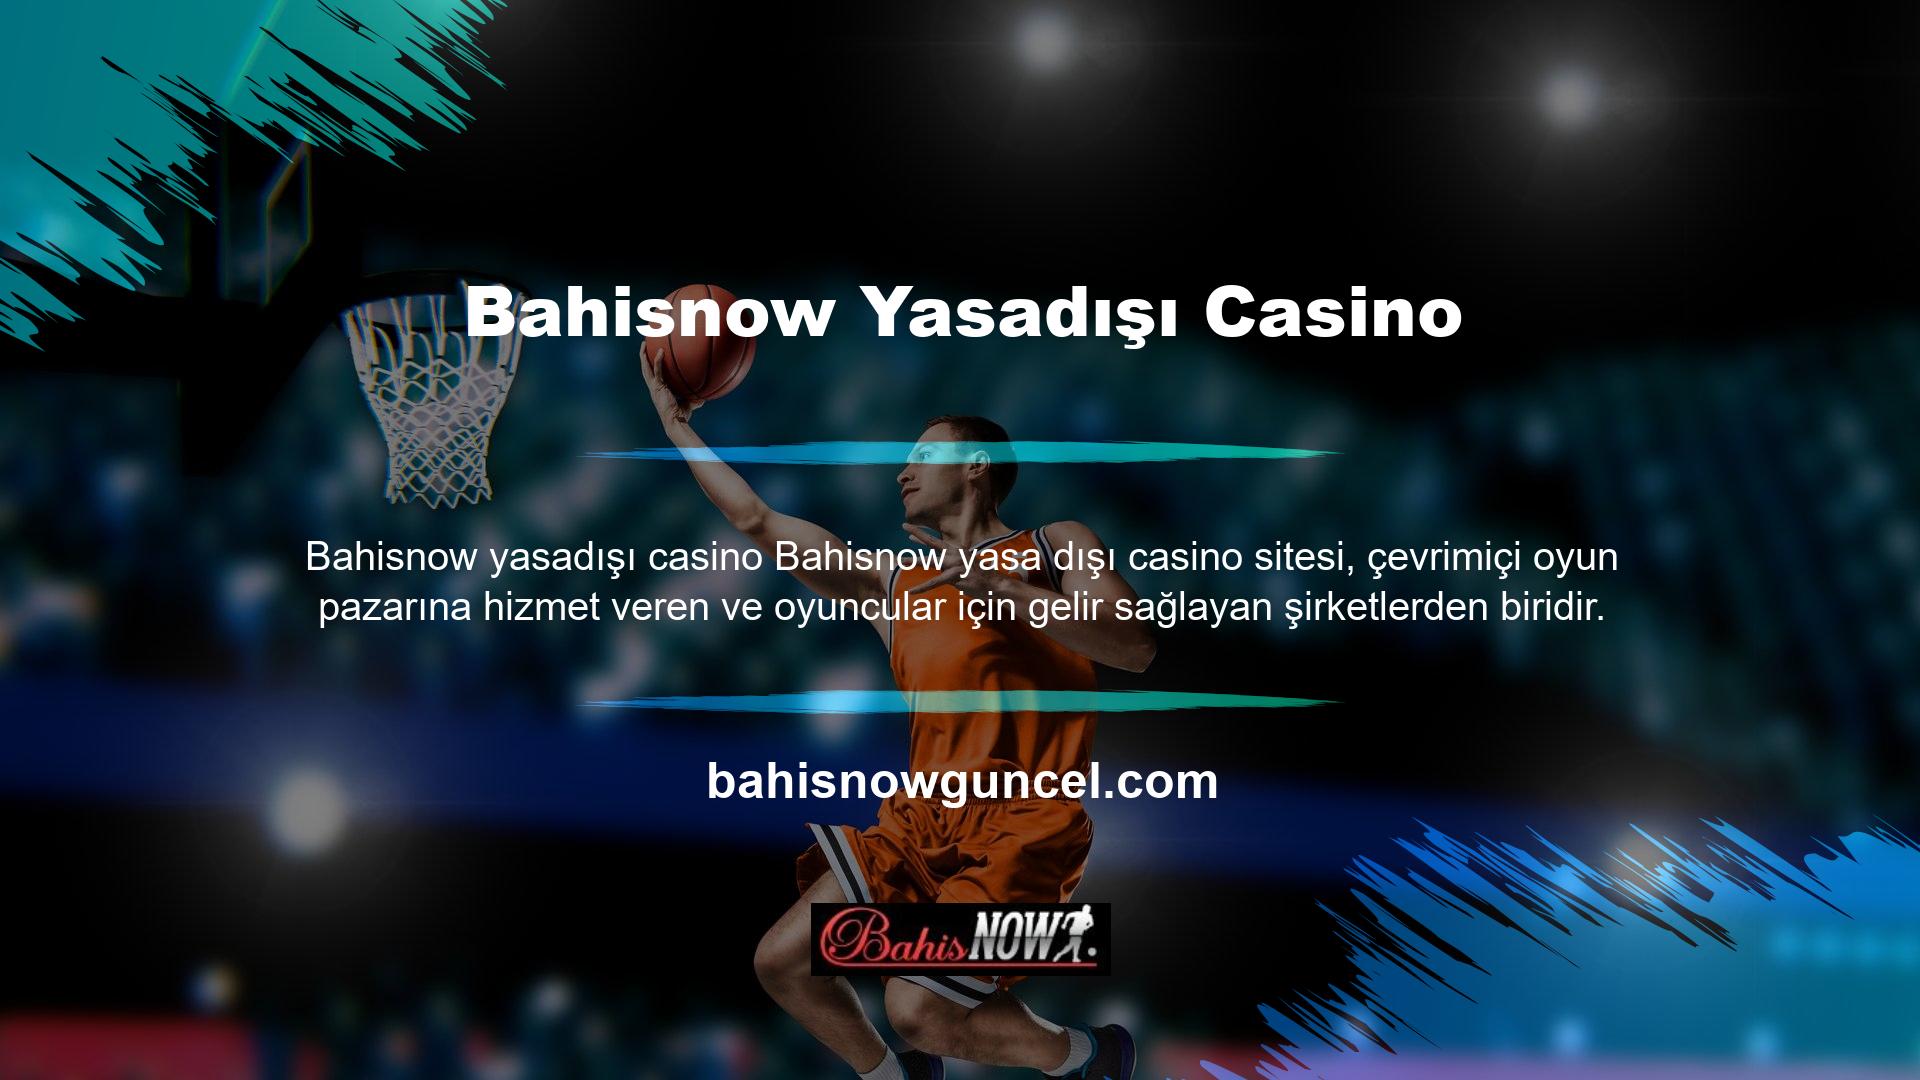 Bahisnow Bahis Sitesi, internette canlı bahis ve casino oyun hizmetleri sunan lider bir sağlayıcıdır ve içeriği tüm bahisçilerin ihtiyaçlarına uygundur